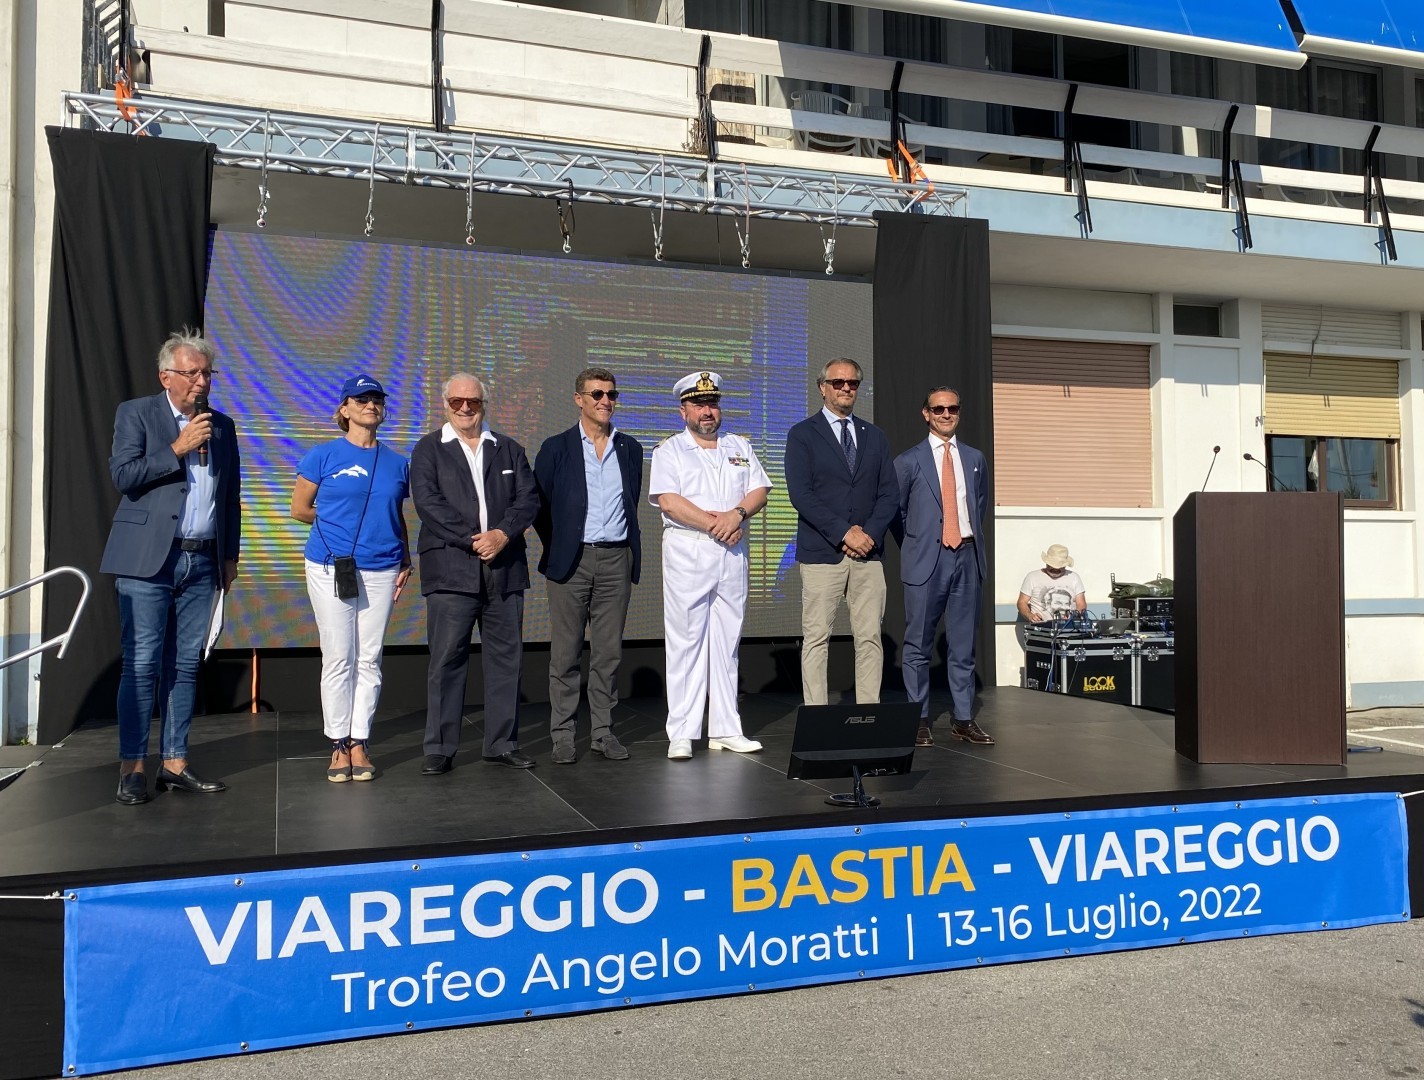 Aperta ufficialmente la Viareggio Bastia Viareggio, Trofeo Angelo Moratti 2022